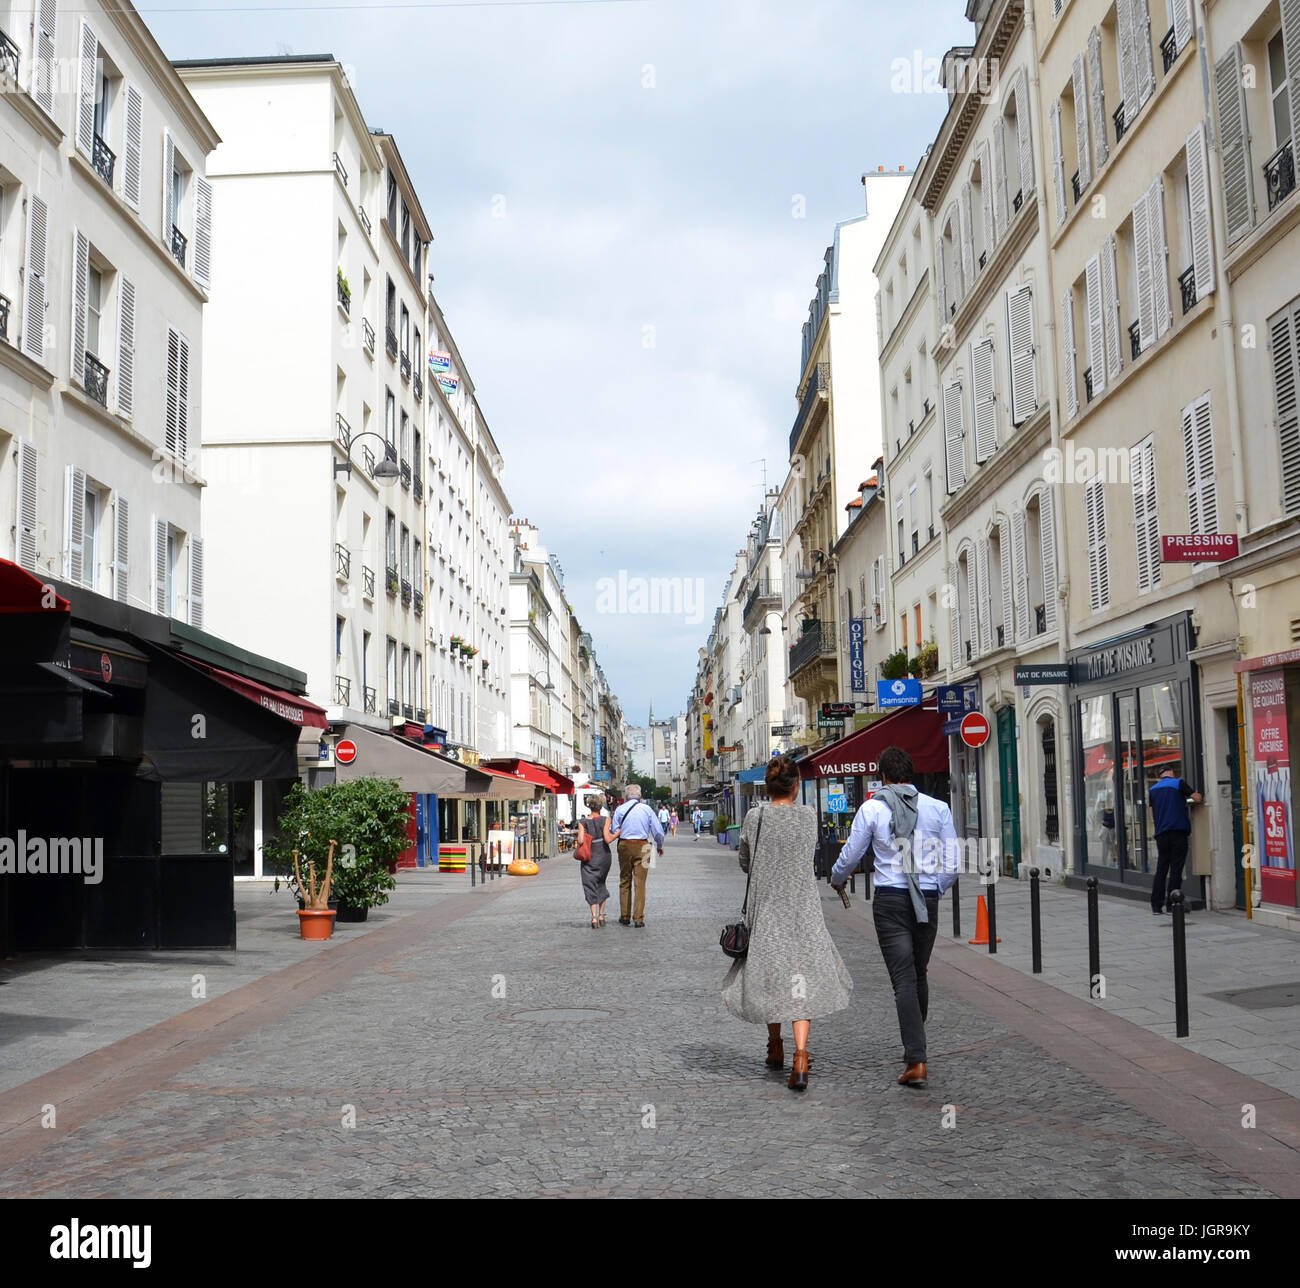 Parigi - AGO 8: persone che camminano giù per una strada di mattoni a Parigi, in Francia il 8 agosto 2016. Foto Stock